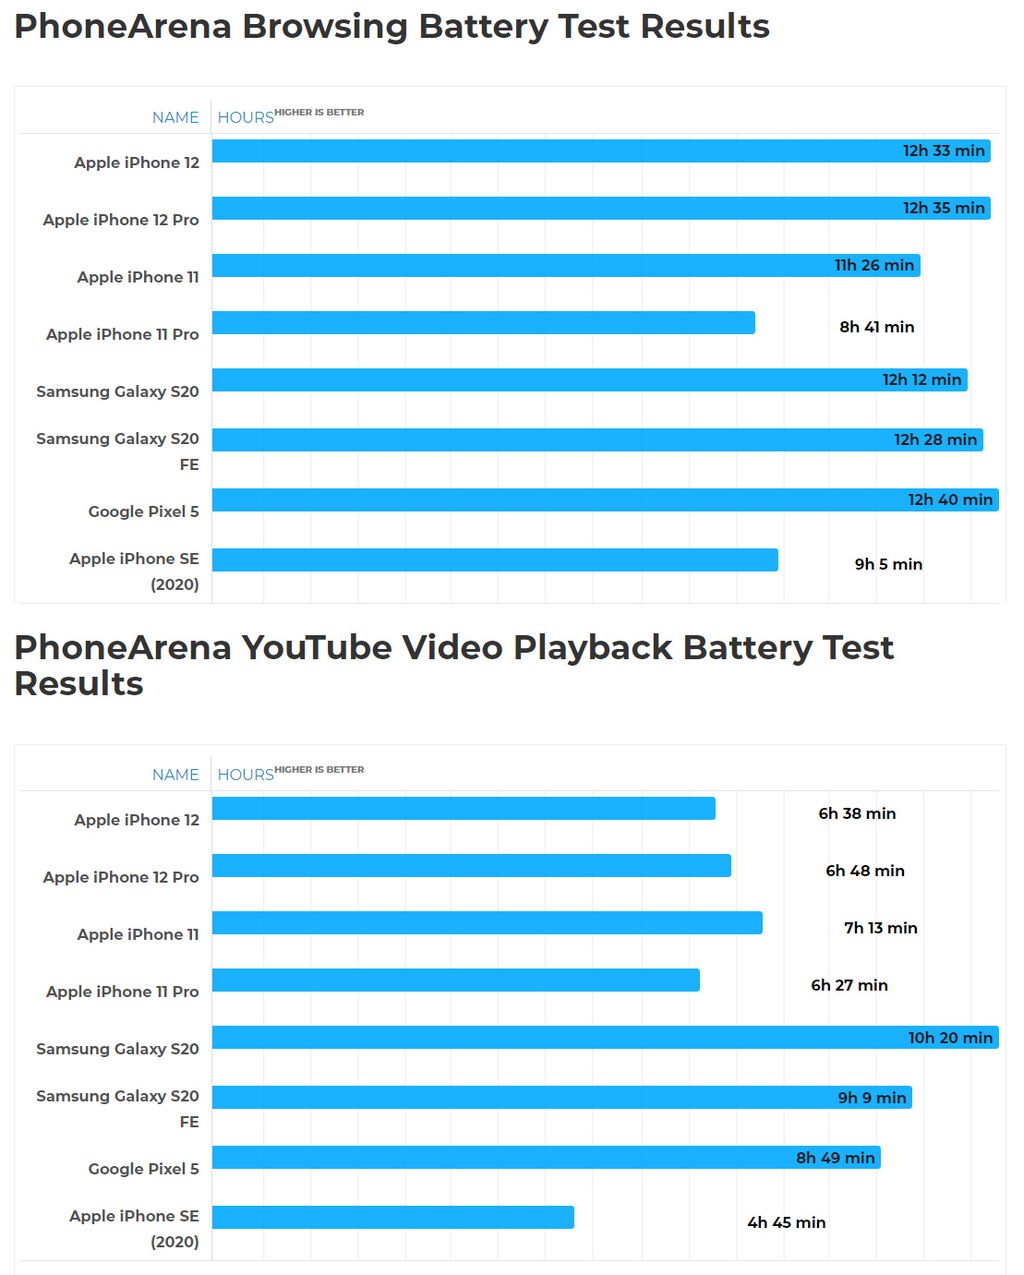 Testes de bateira em navegação (acima) e reprodução de vídeo online (abaixo) no iPhone 12 e concorrentes (Imagem: Reprodução/PhoneArena)